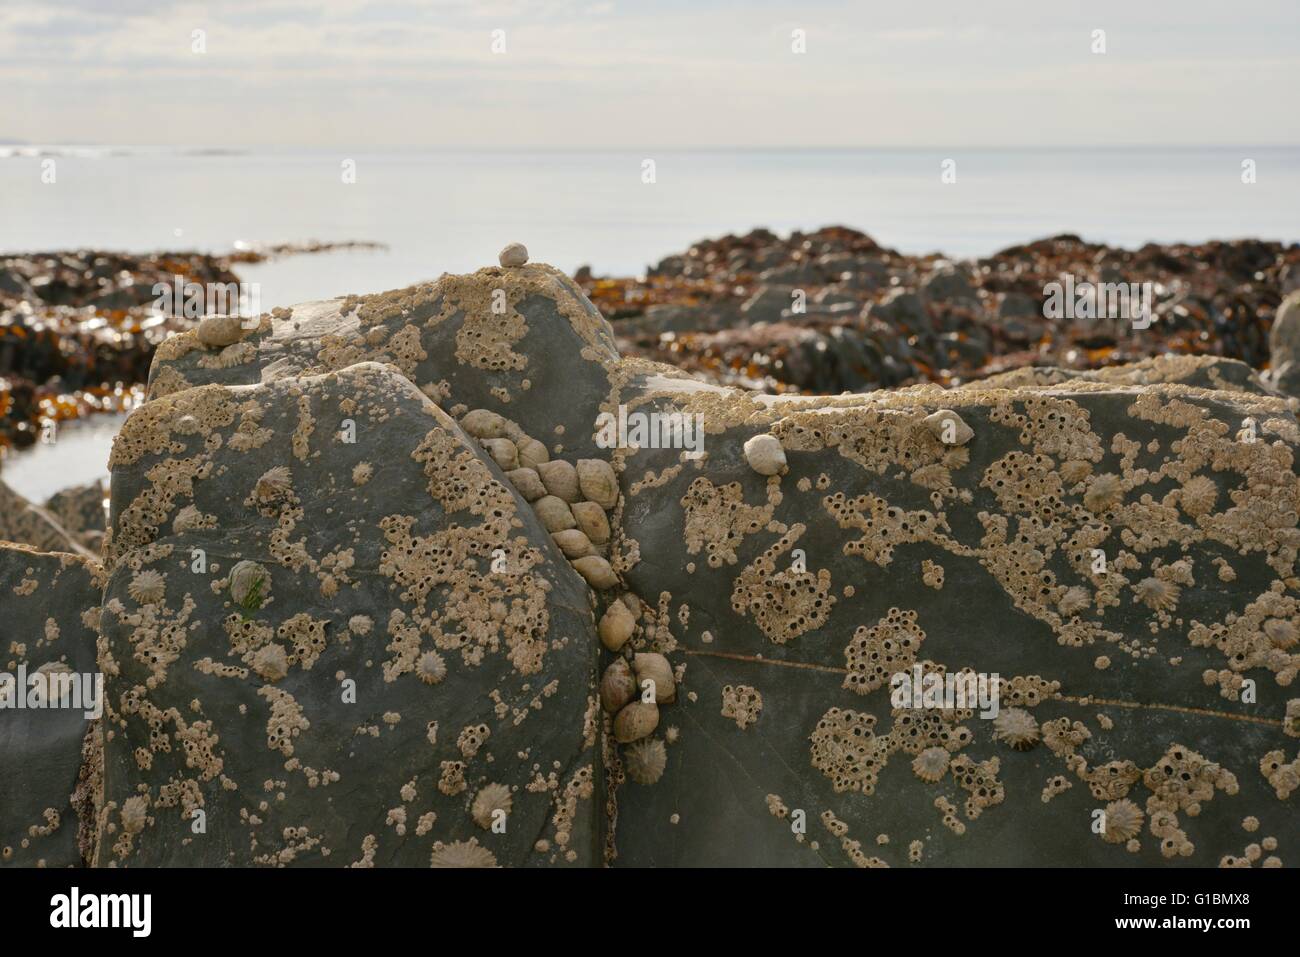 Seepocken und Hund Wellhornschnecken, Nucella Lapilli Clusterbildung im Schatten in der küstennahe Zone bei Ebbe, Wales, UK Stockfoto